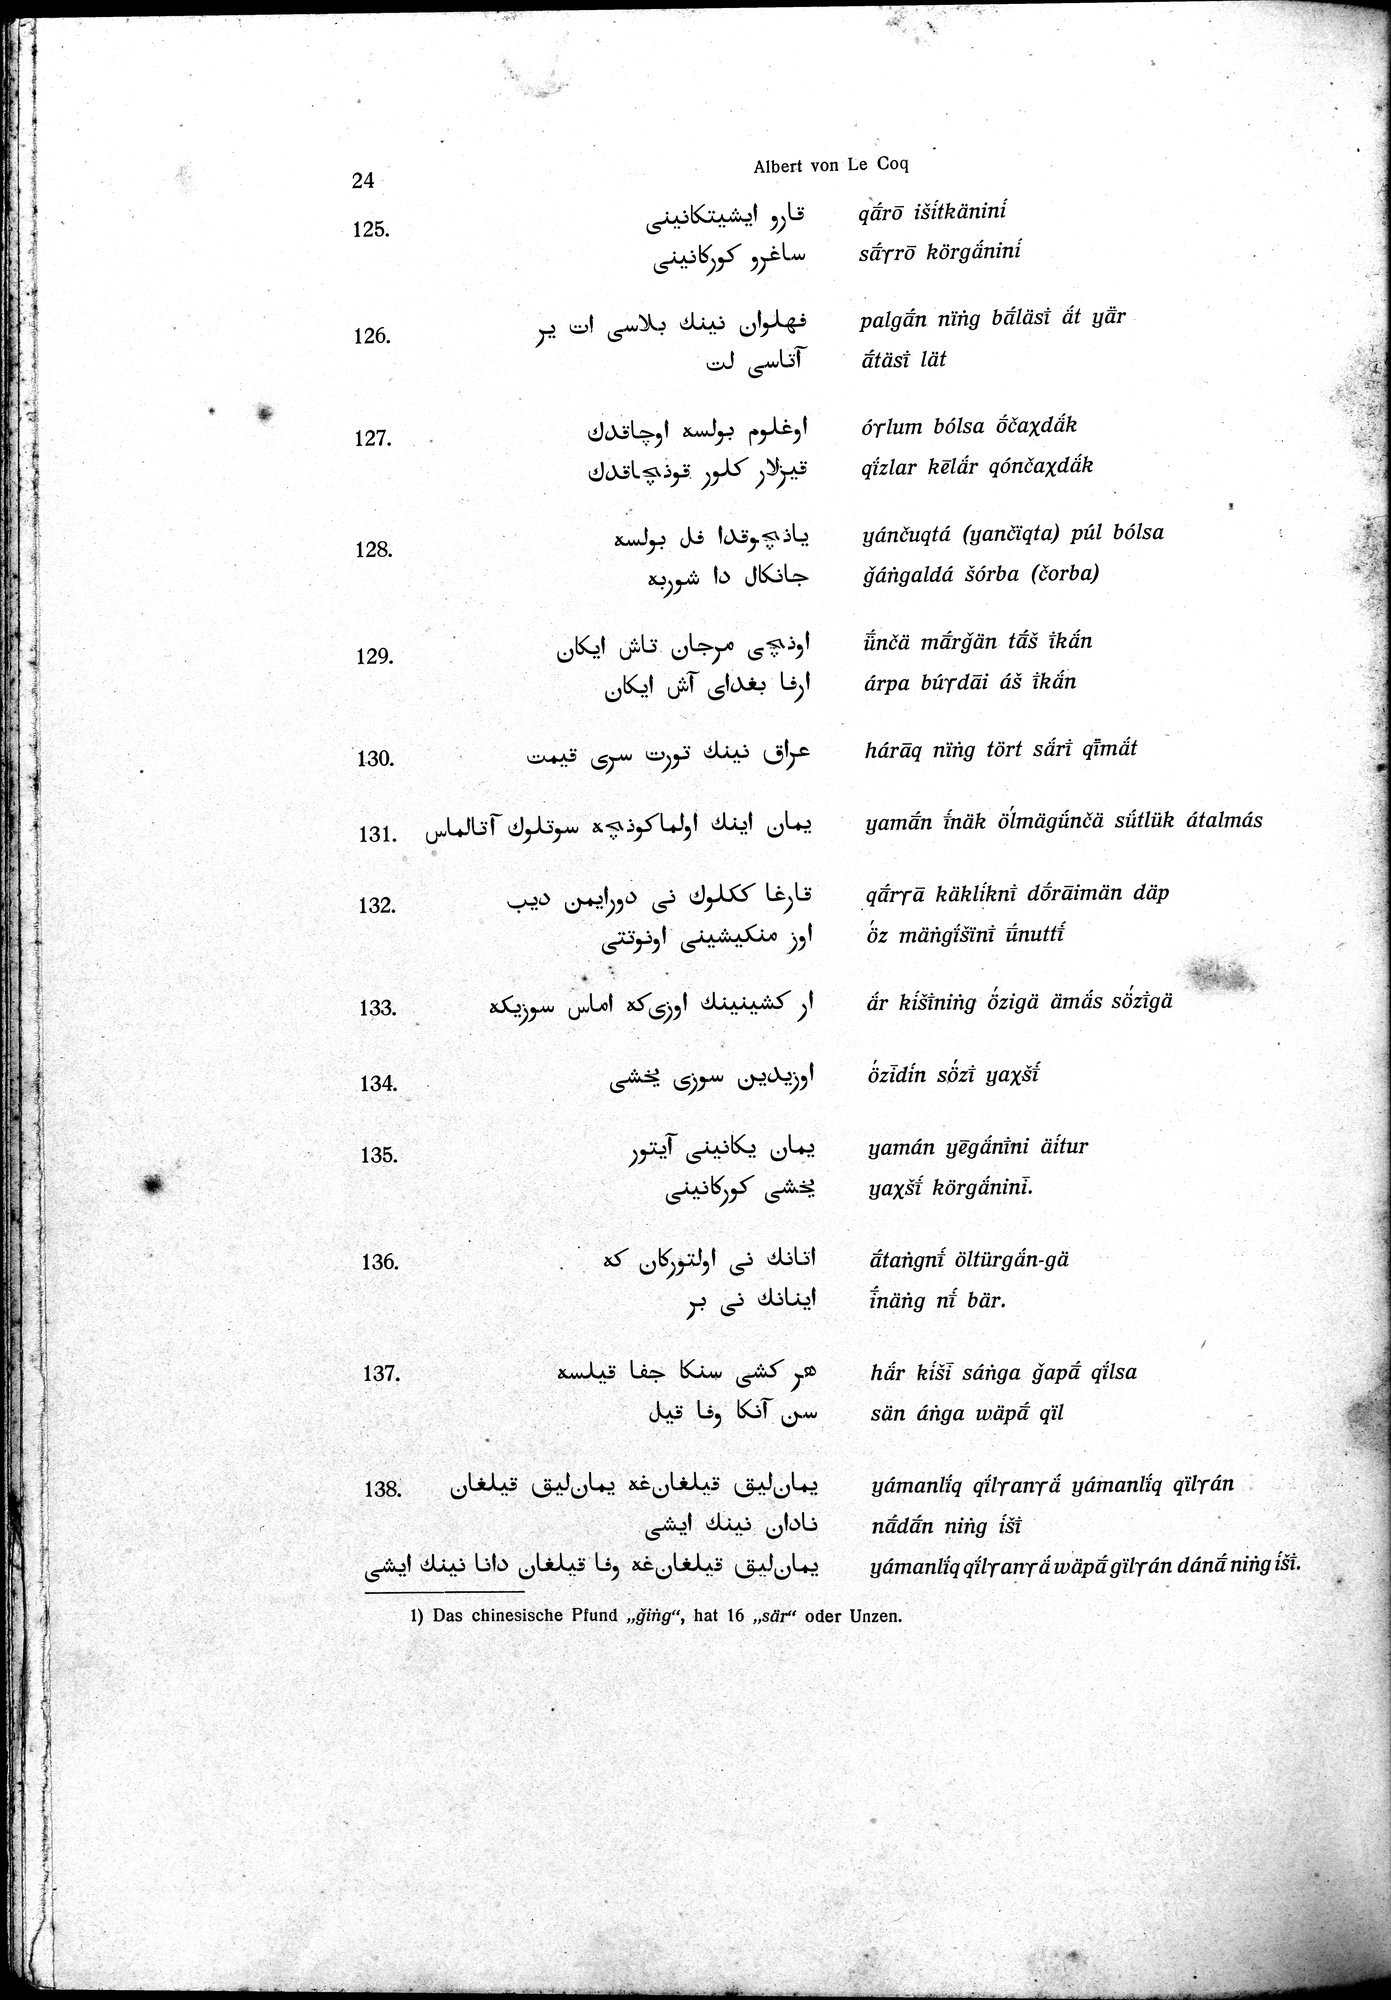 Sprichwörter und Lieder aus der Gegend von Turfan : vol.1 / Page 36 (Grayscale High Resolution Image)